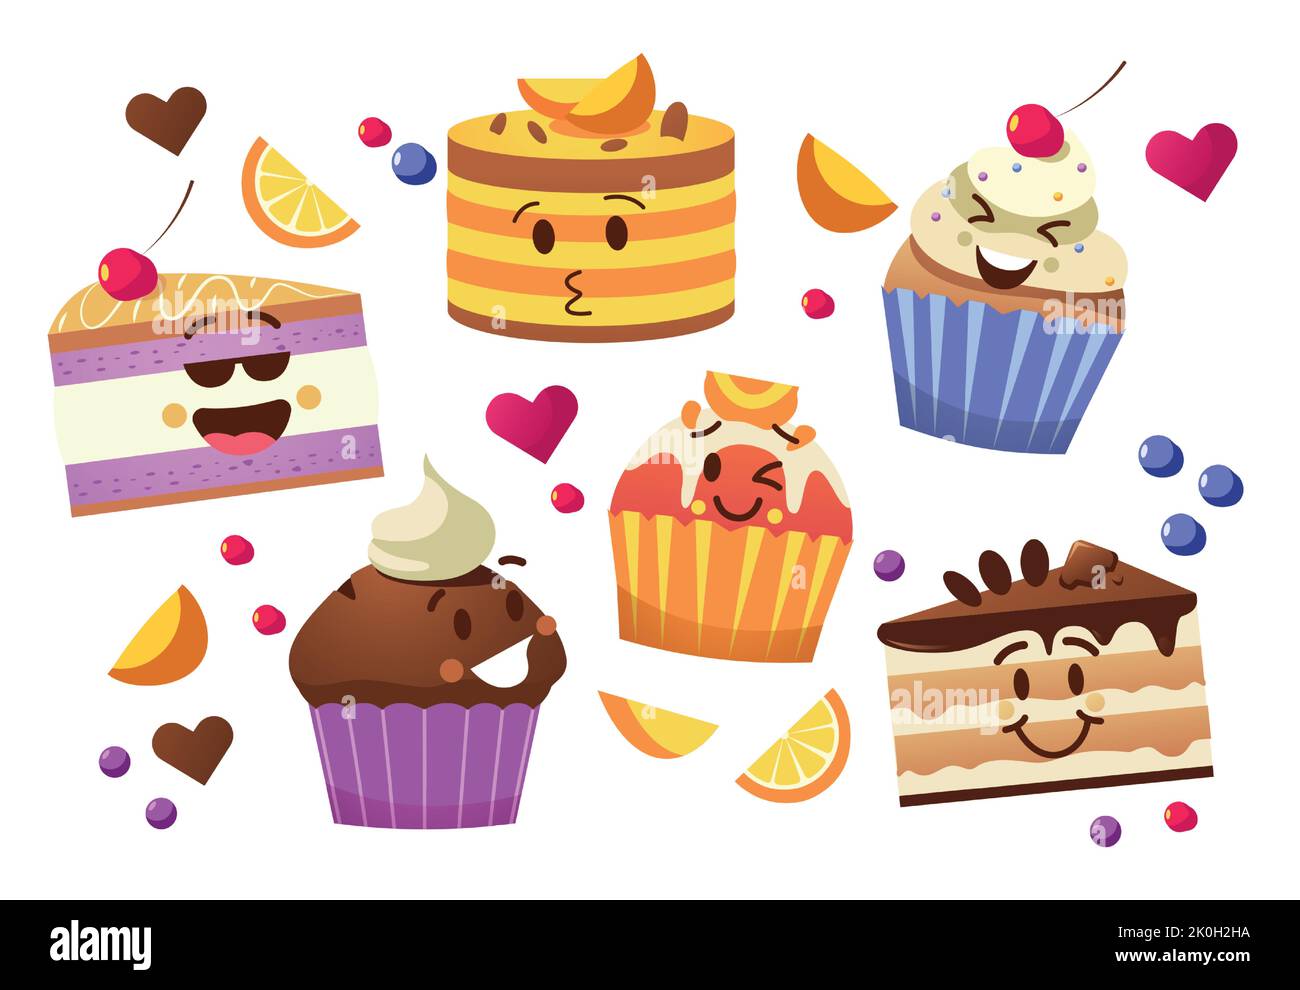 Cupcake-Figuren. Kawaii Cartoon Muffins, süße Kuchen Maskottchen mit niedlichen Emoticon Gesichter, leckere Backwaren lustige Aufkleber. Vector Gebäck-Set Stock Vektor